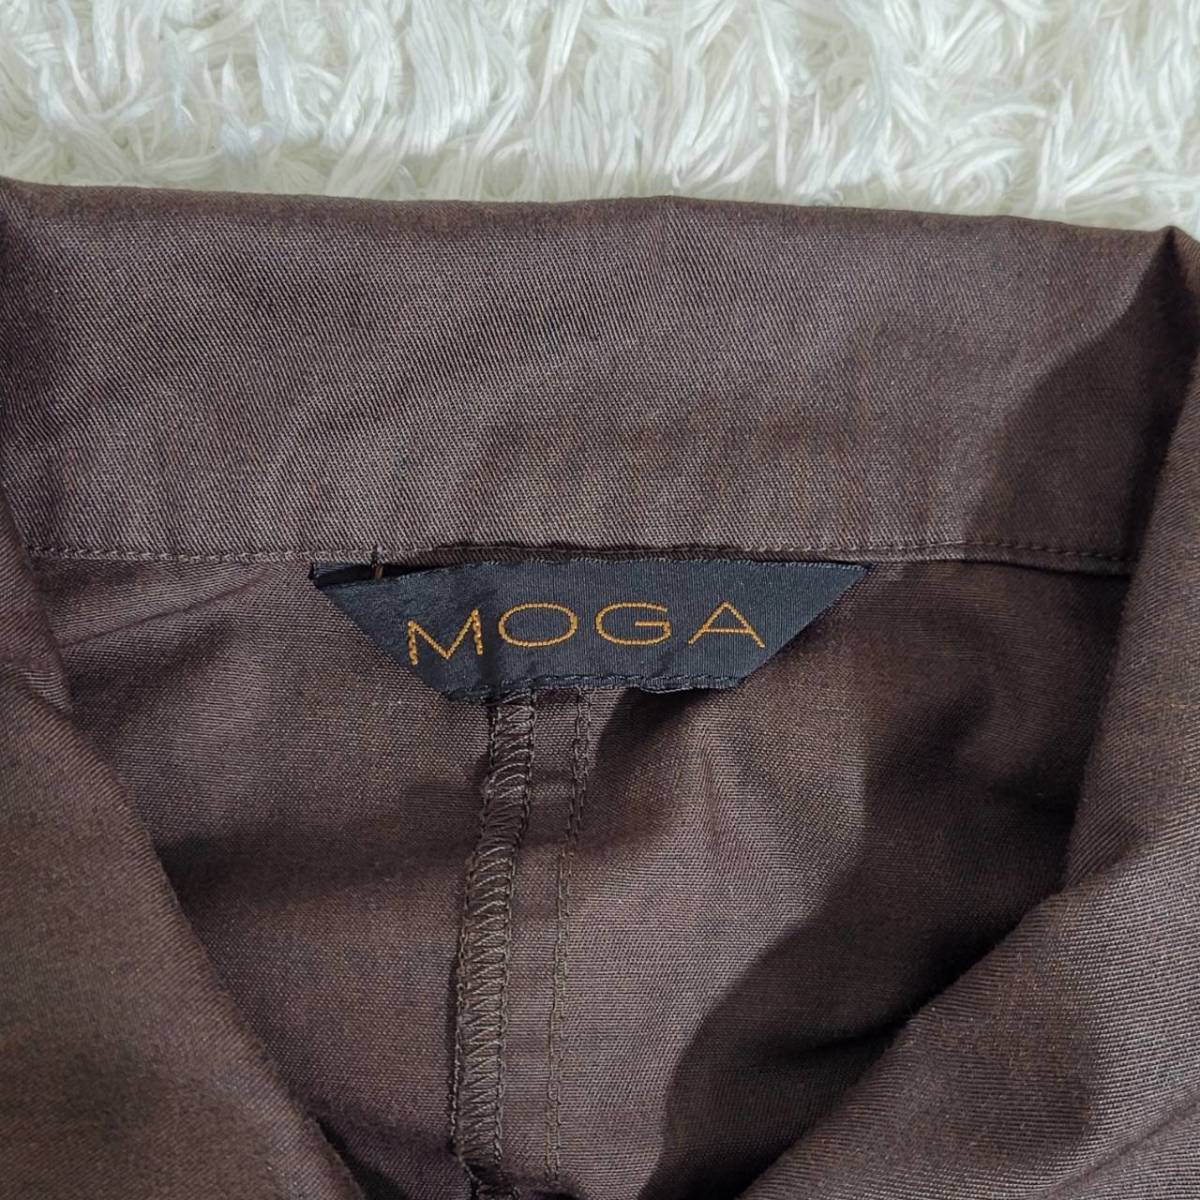 メンズF MOGA 長袖シャツ 茶色 ブラウン カジュアル シンプル ポケット 無地 お出かけ モガ 【21149】